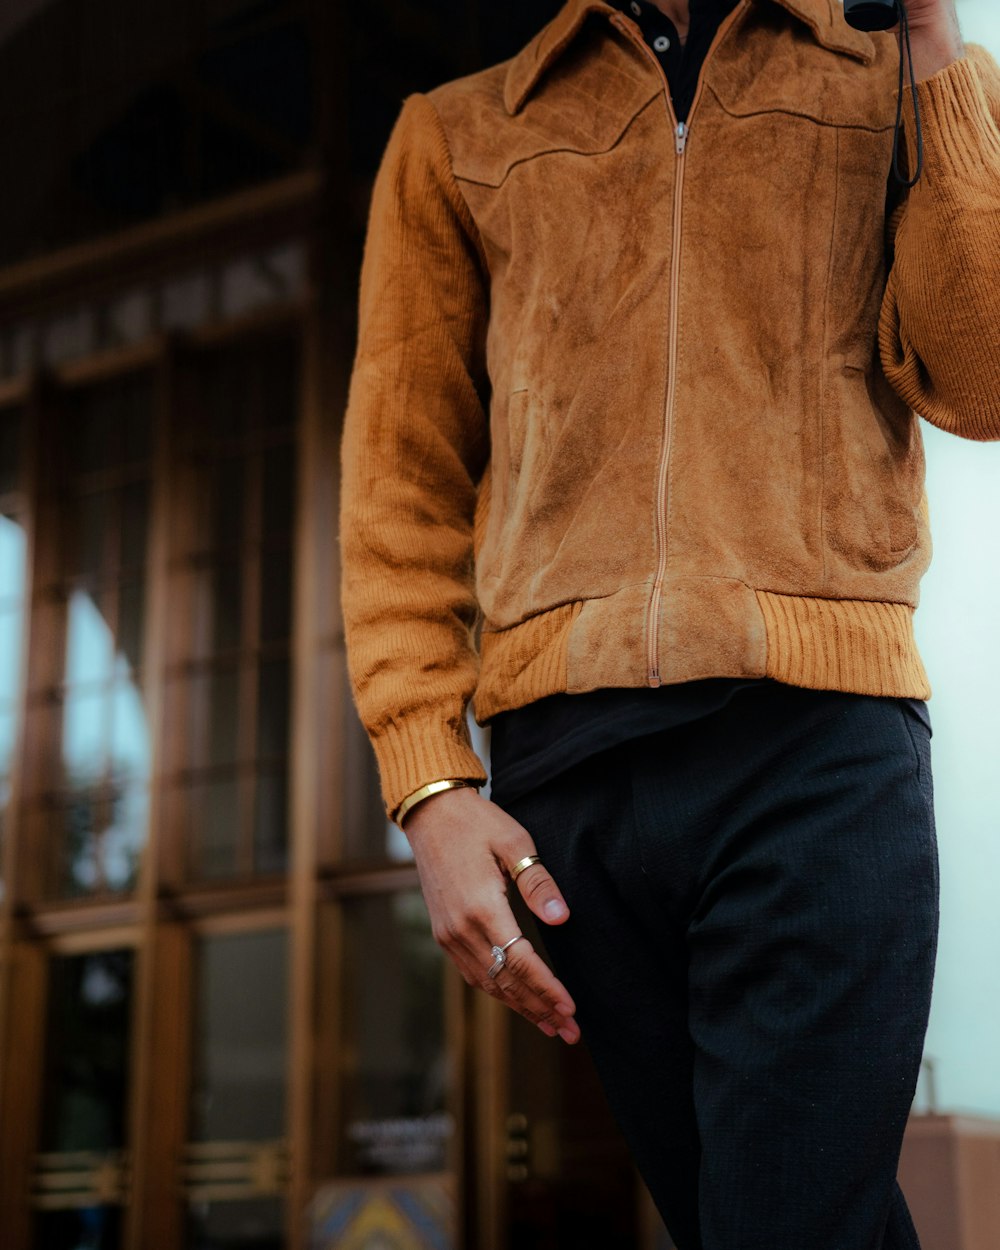 Foto Hombre con chaqueta marrón con cremallera y pantalón negro – Marrón gratis en Unsplash